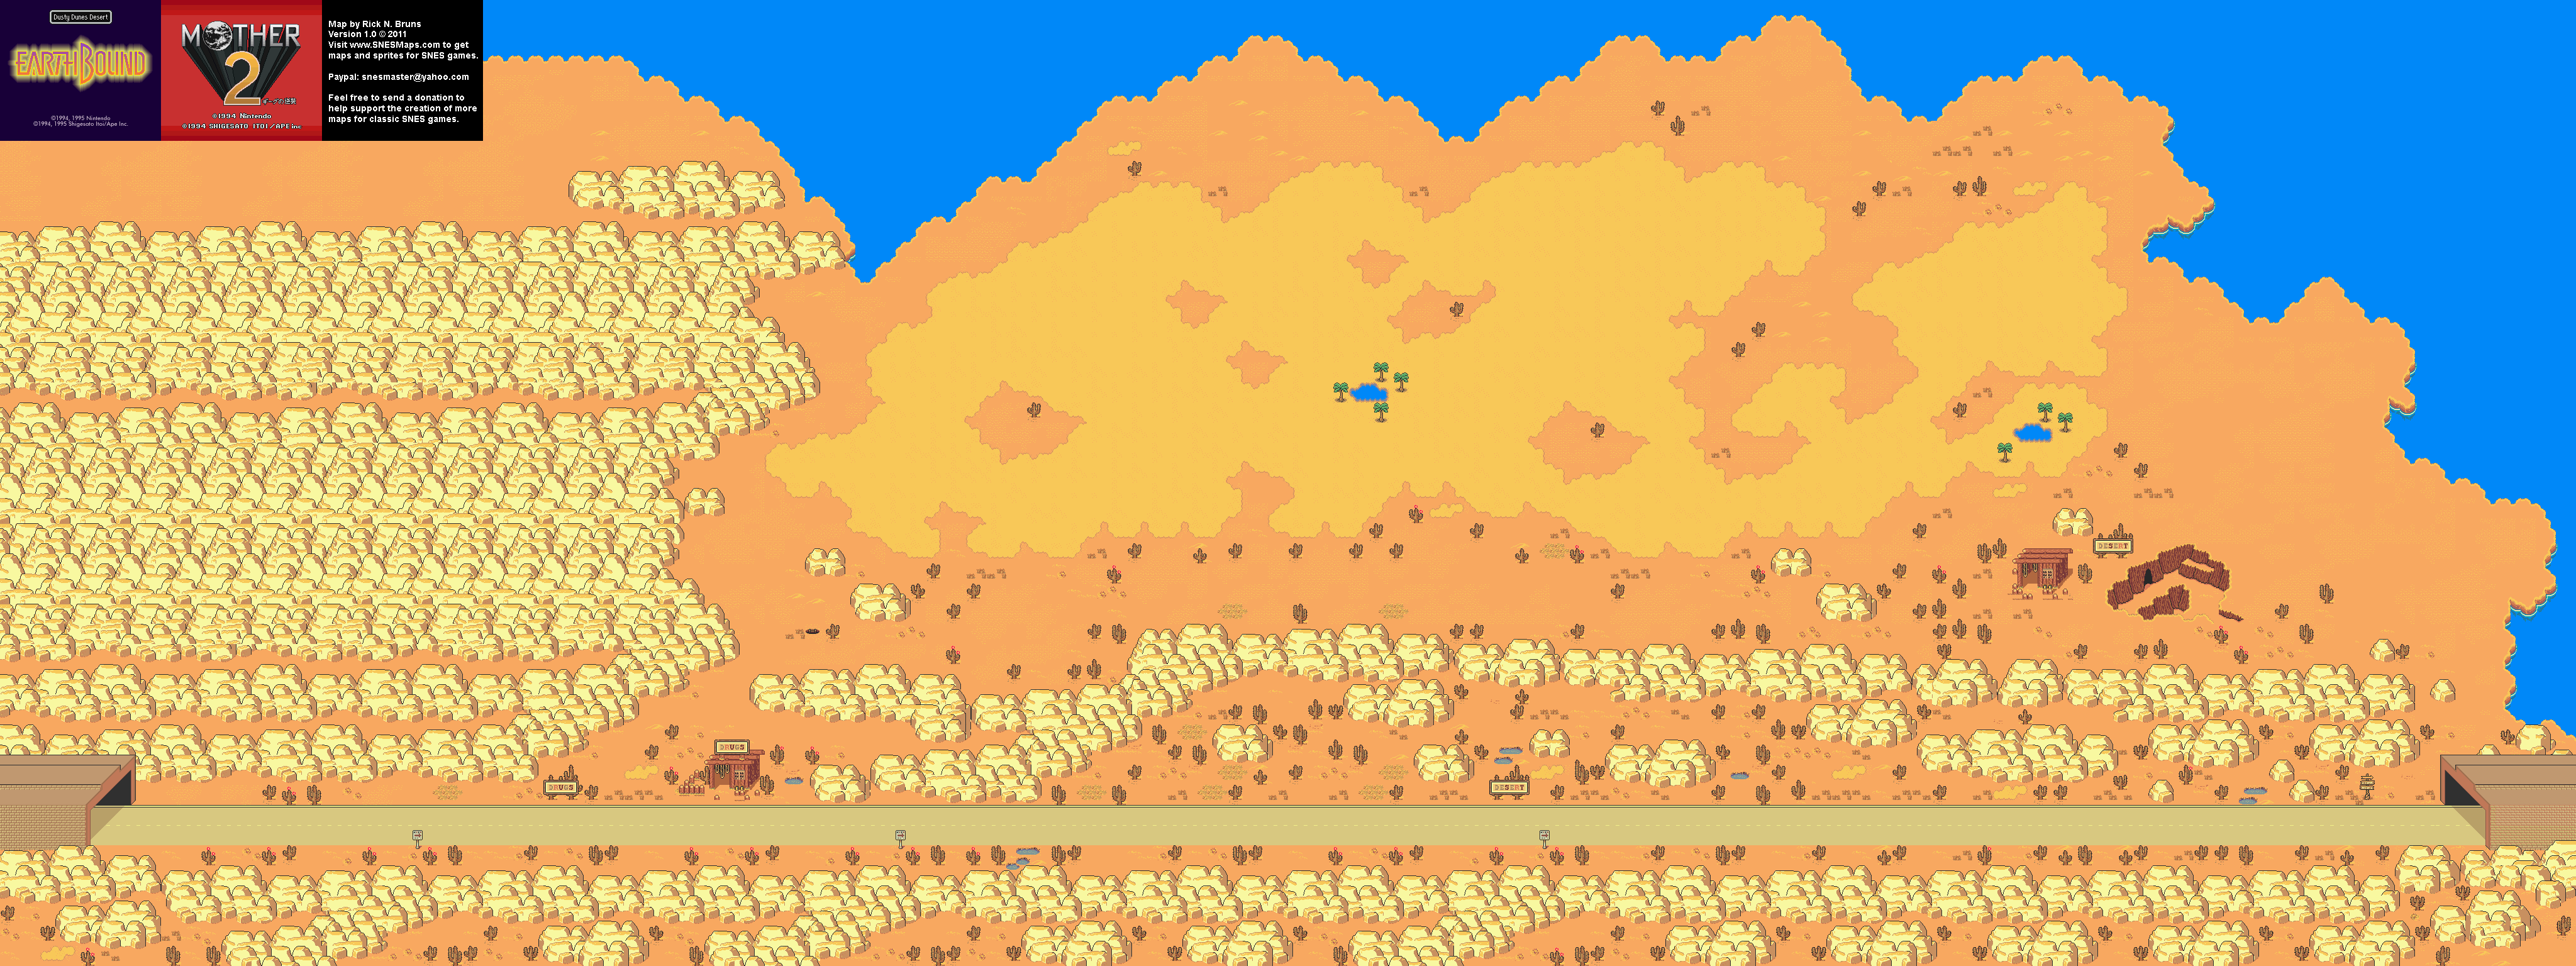 EarthBound (Mother 2) - Dusty Dunes Desert Super Nintendo SNES Map BG